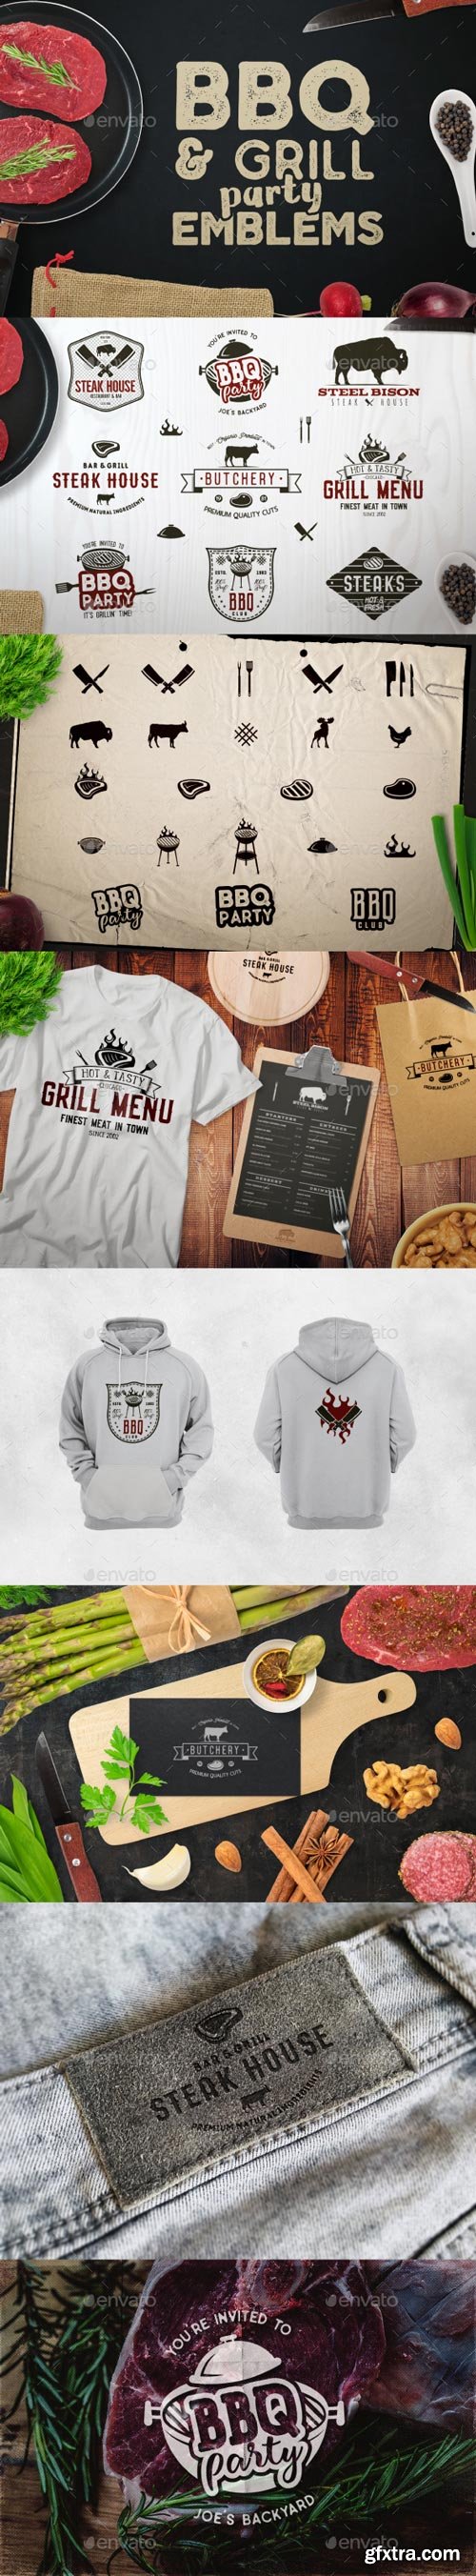 GraphicRiver - BBQ Logos & Grill Emblems Set - 20574610